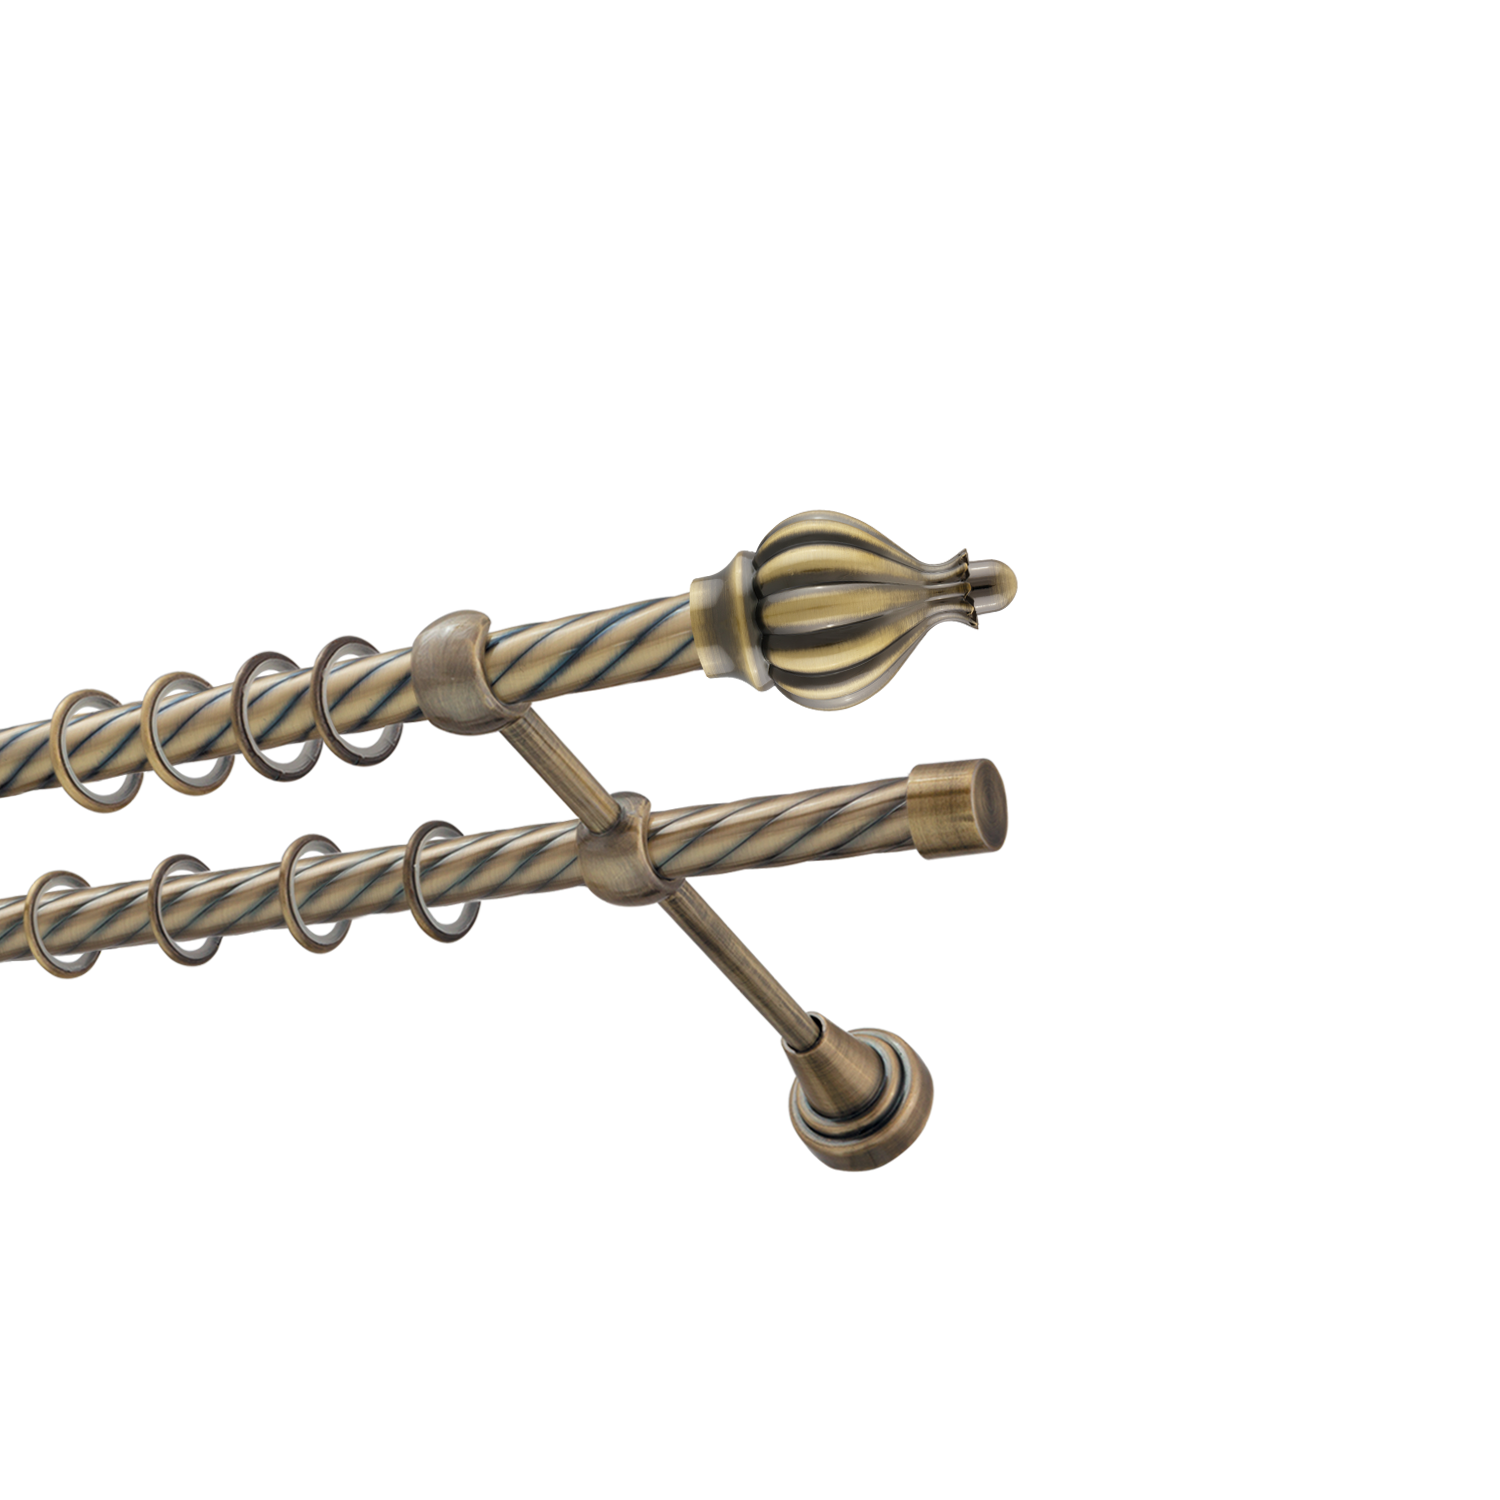 Металлический карниз для штор Афродита, двухрядный 16/16 мм, бронза, витая штанга, длина 240 см - фото Wikidecor.ru